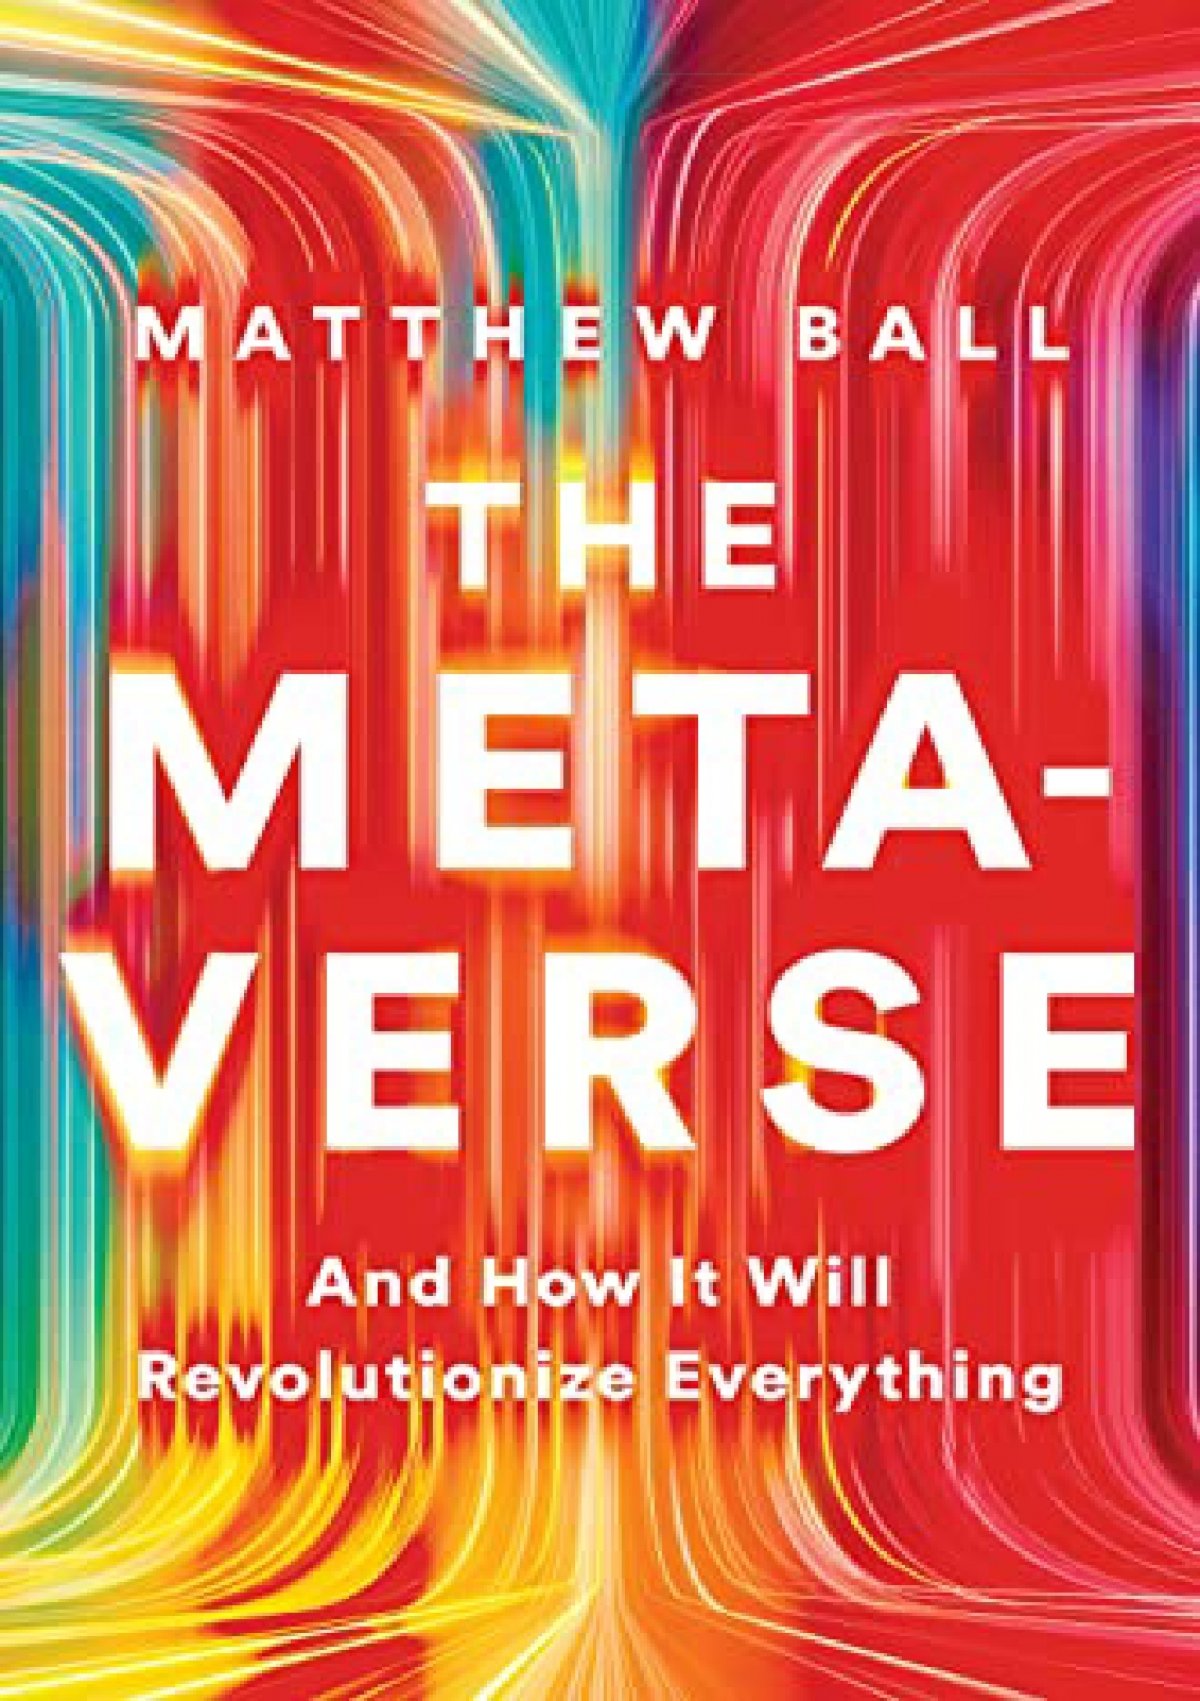 Download gratuito: E-book completo sobre o Metaverso